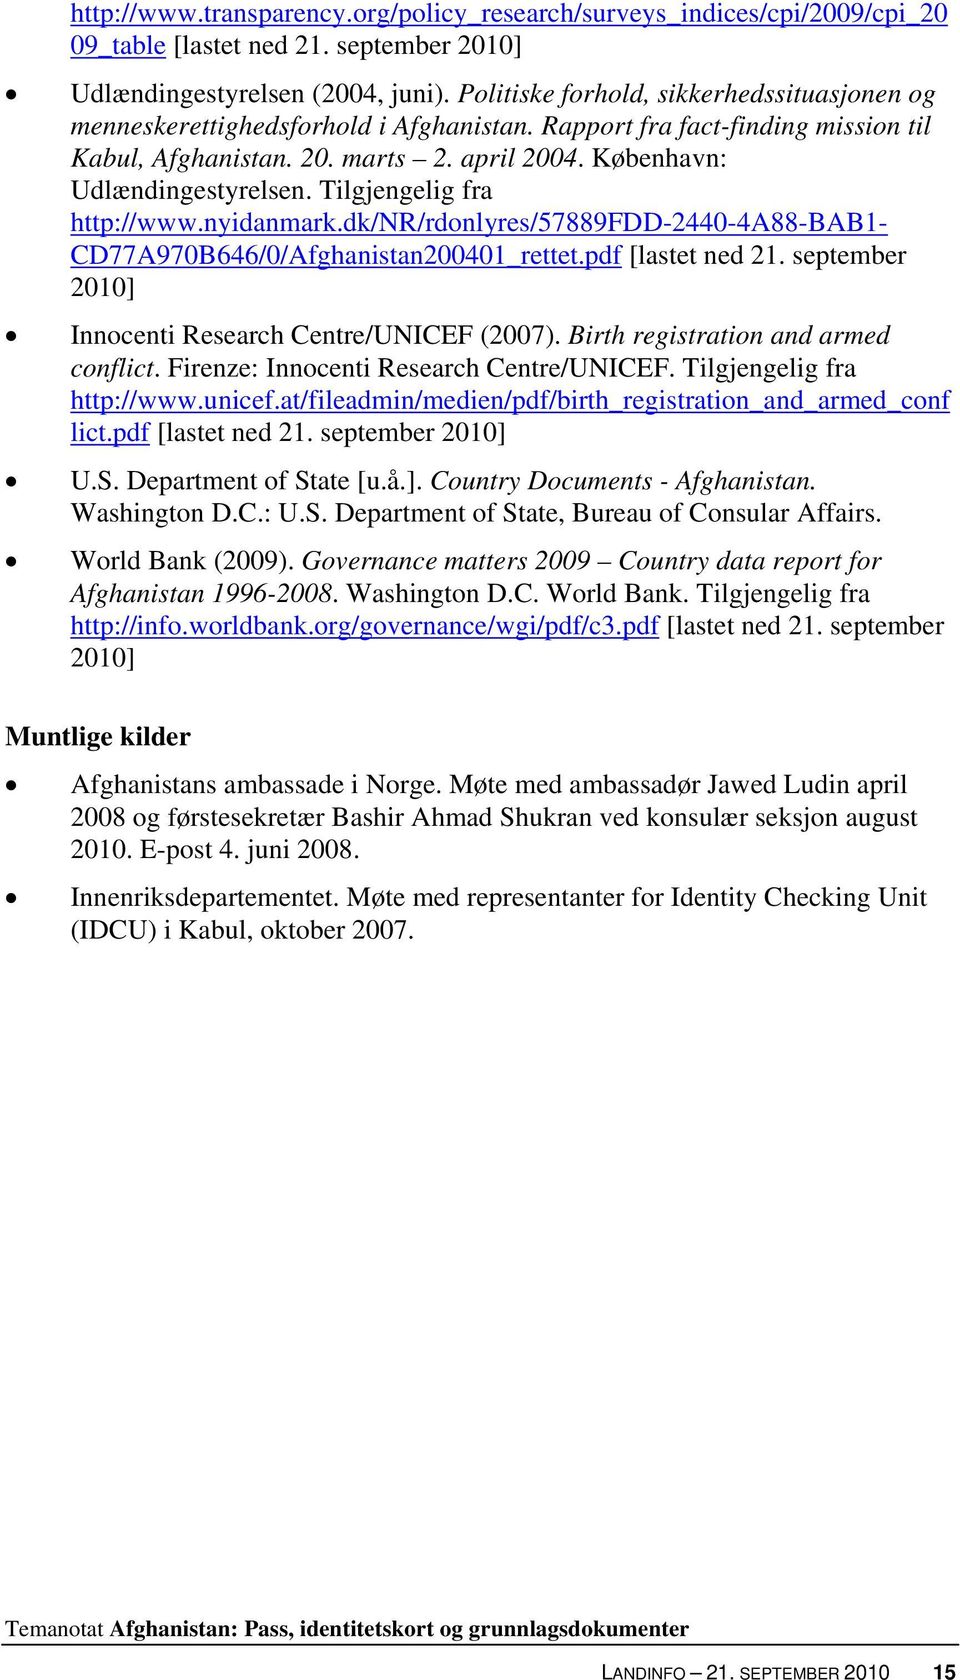 Tilgjengelig fra http://www.nyidanmark.dk/nr/rdonlyres/57889fdd-2440-4a88-bab1- CD77A970B646/0/Afghanistan200401_rettet.pdf [lastet ned 21. september 2010] Innocenti Research Centre/UNICEF (2007).